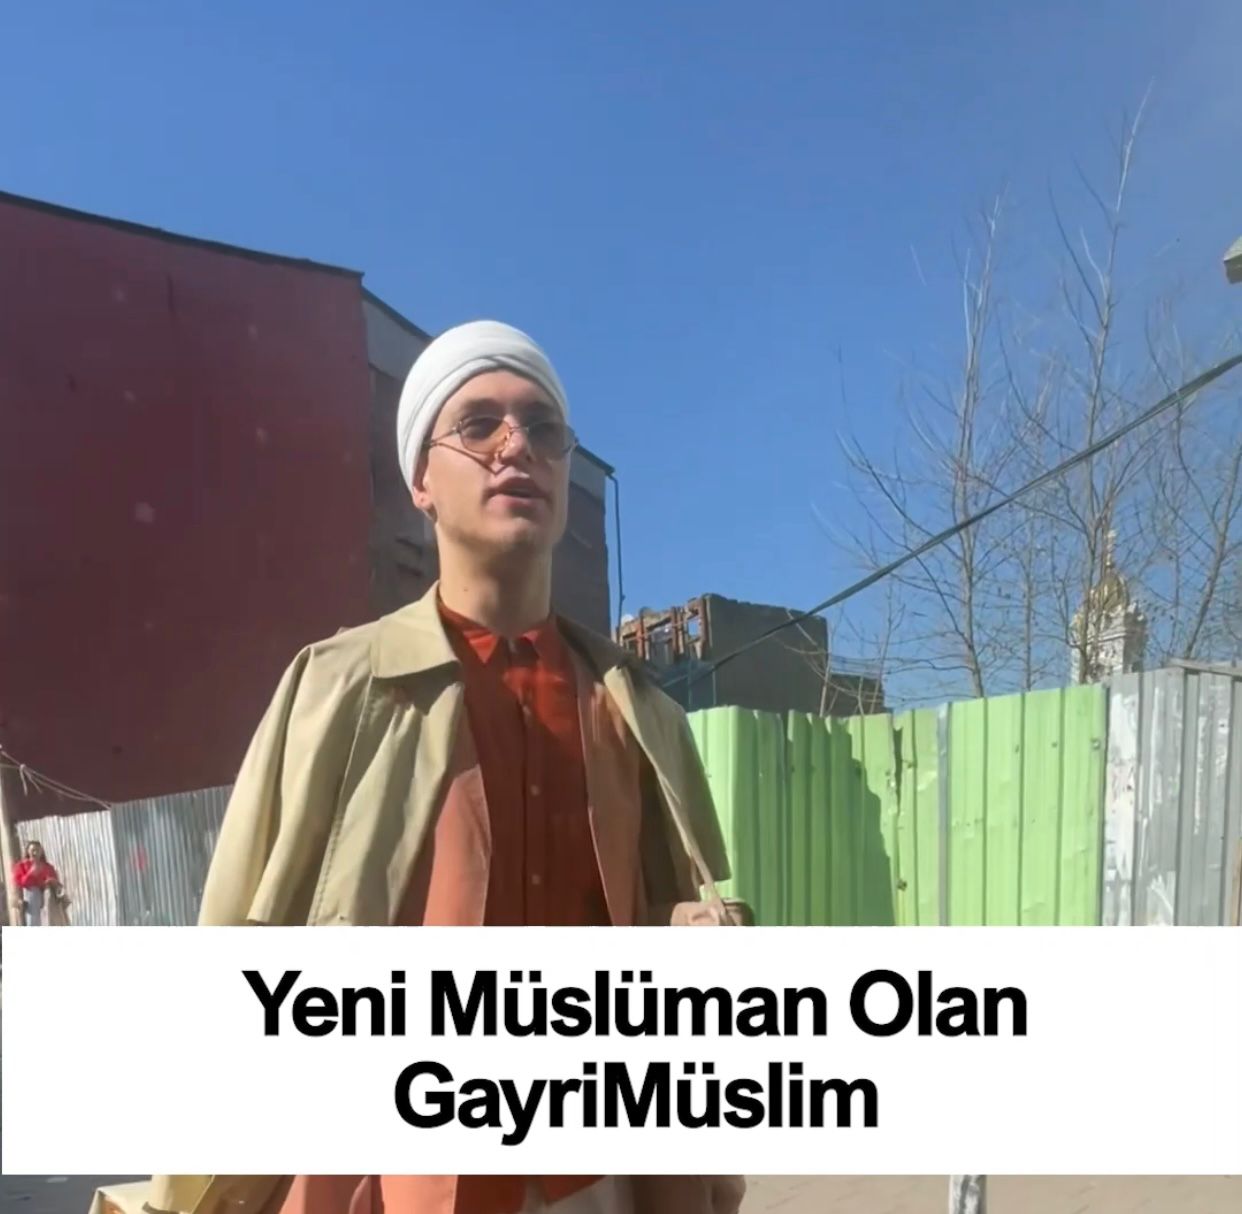 Yeni müslüman olan azeri gayrimüslim